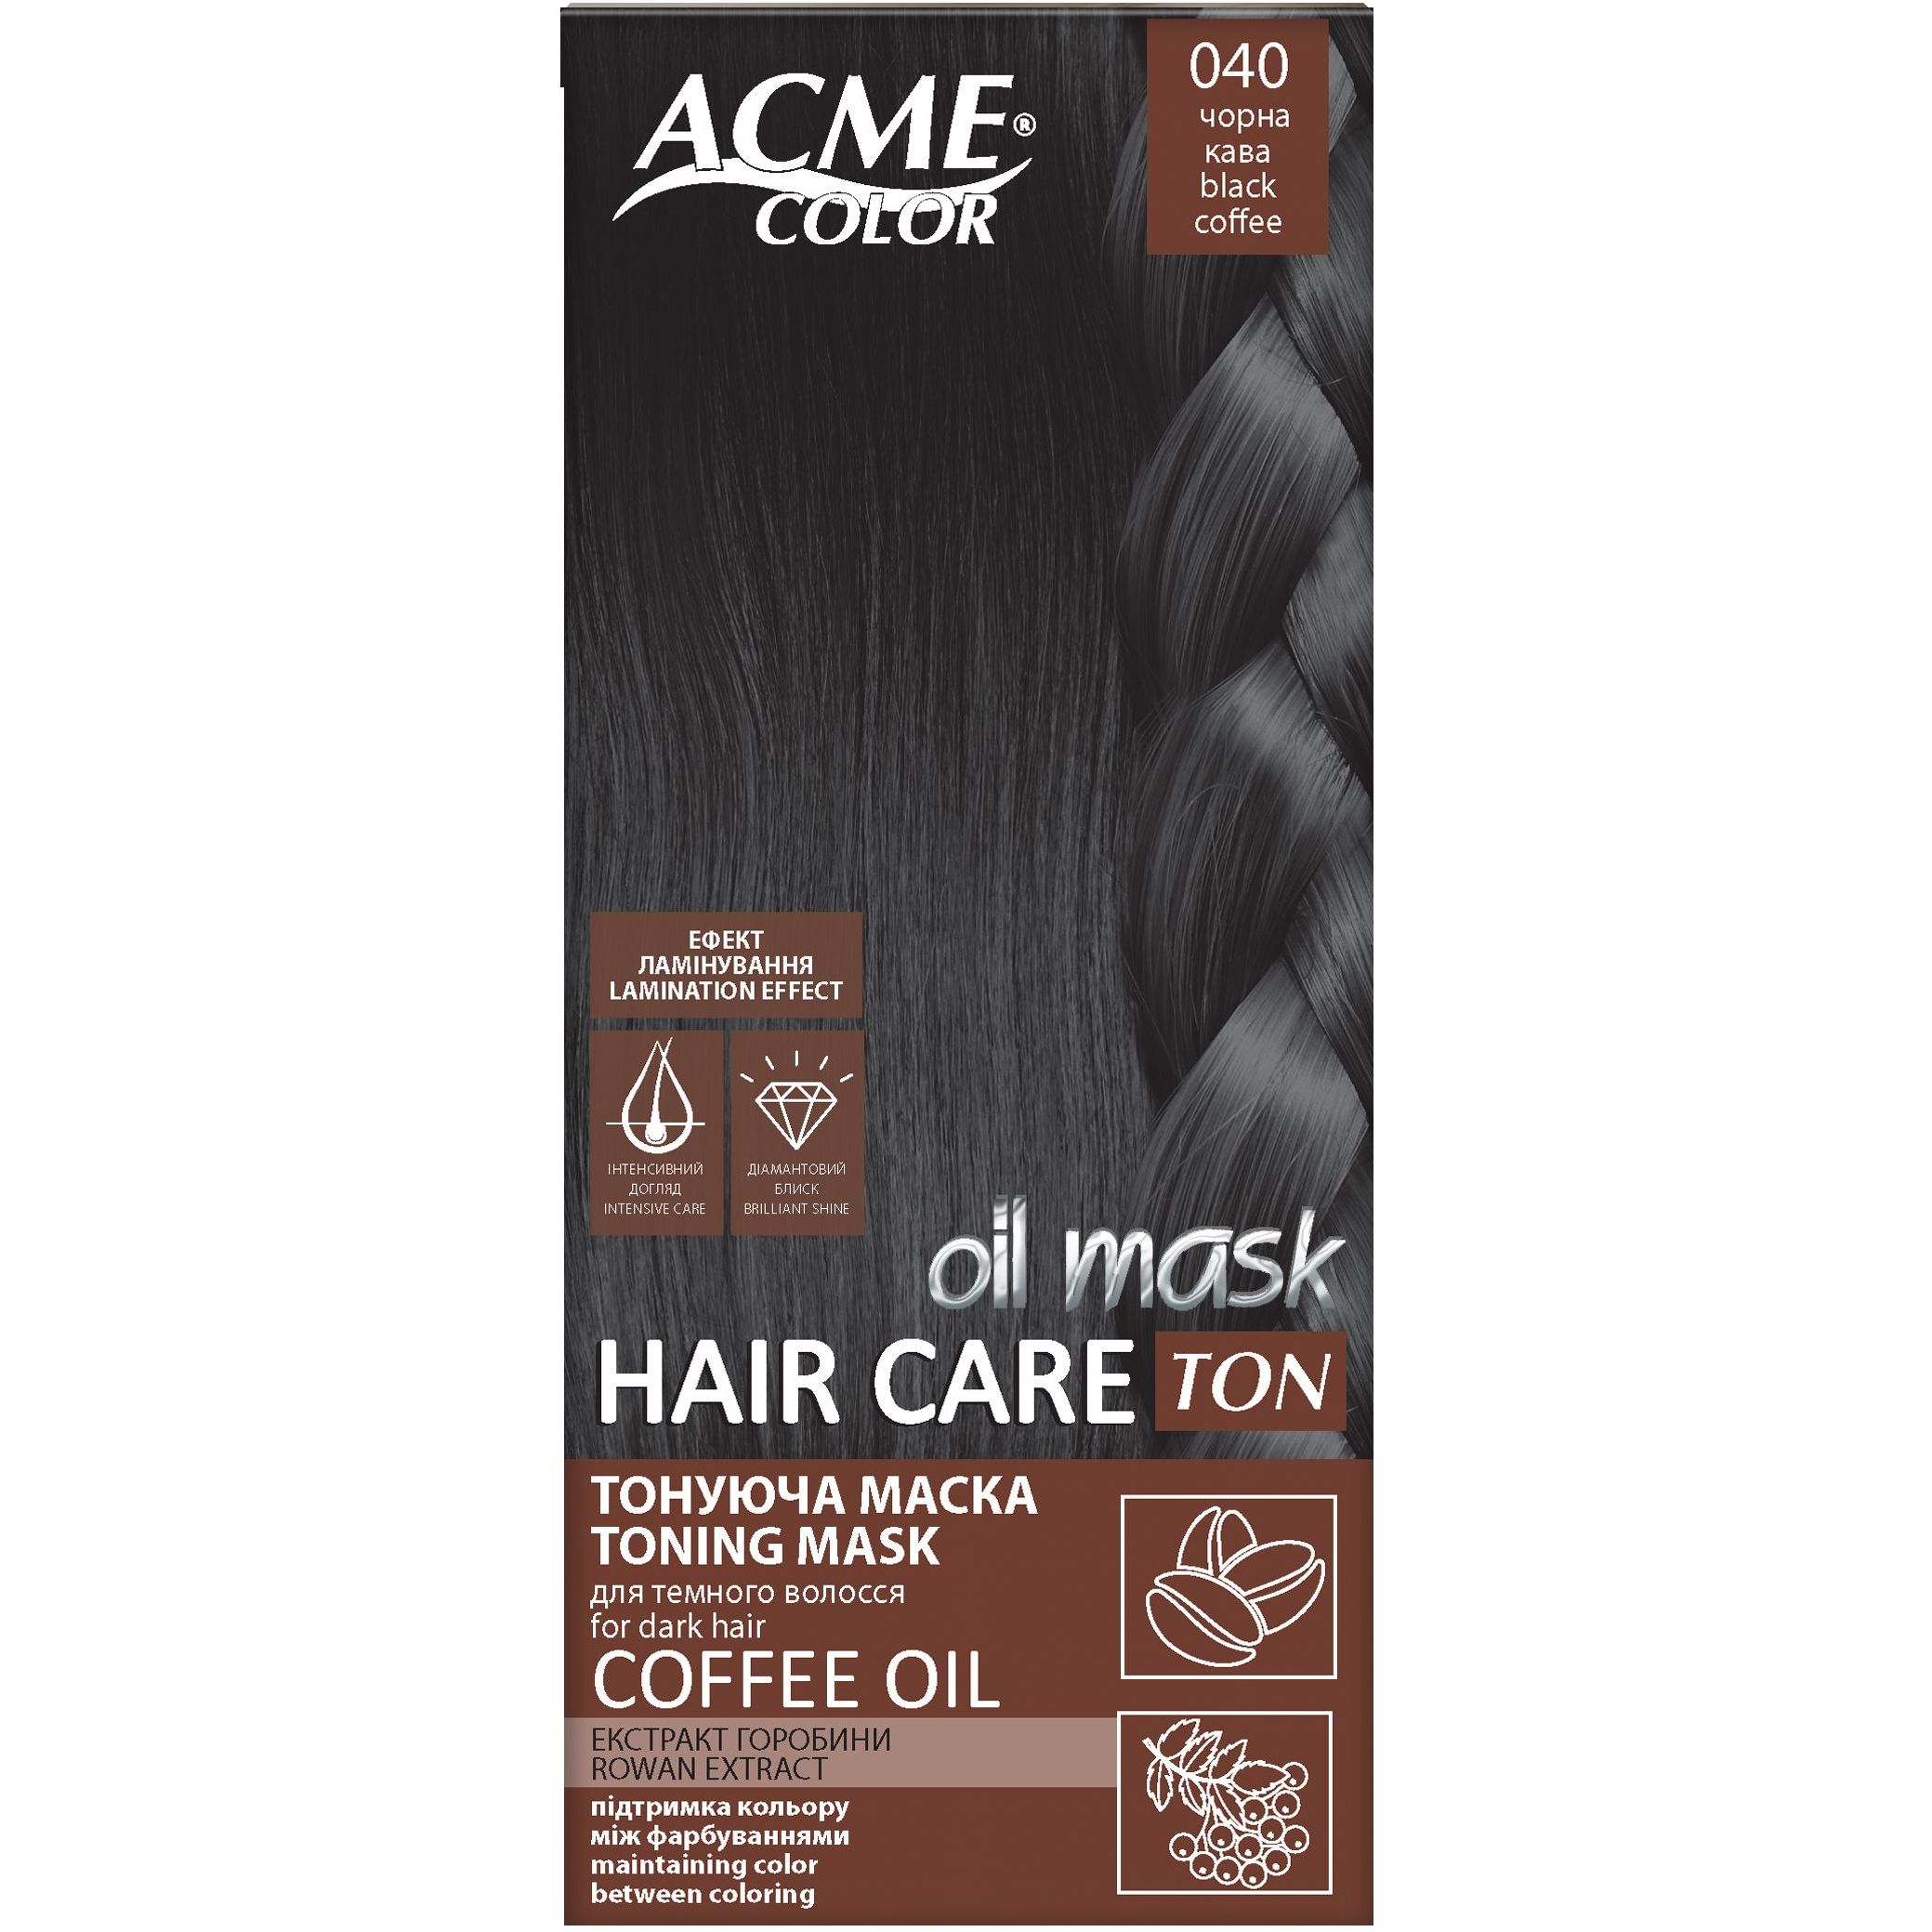 Тонуюча маска для волосся Acme Color Hair Care Ton oil mask, відтінок 040, чорна кава, 30 мл - фото 1